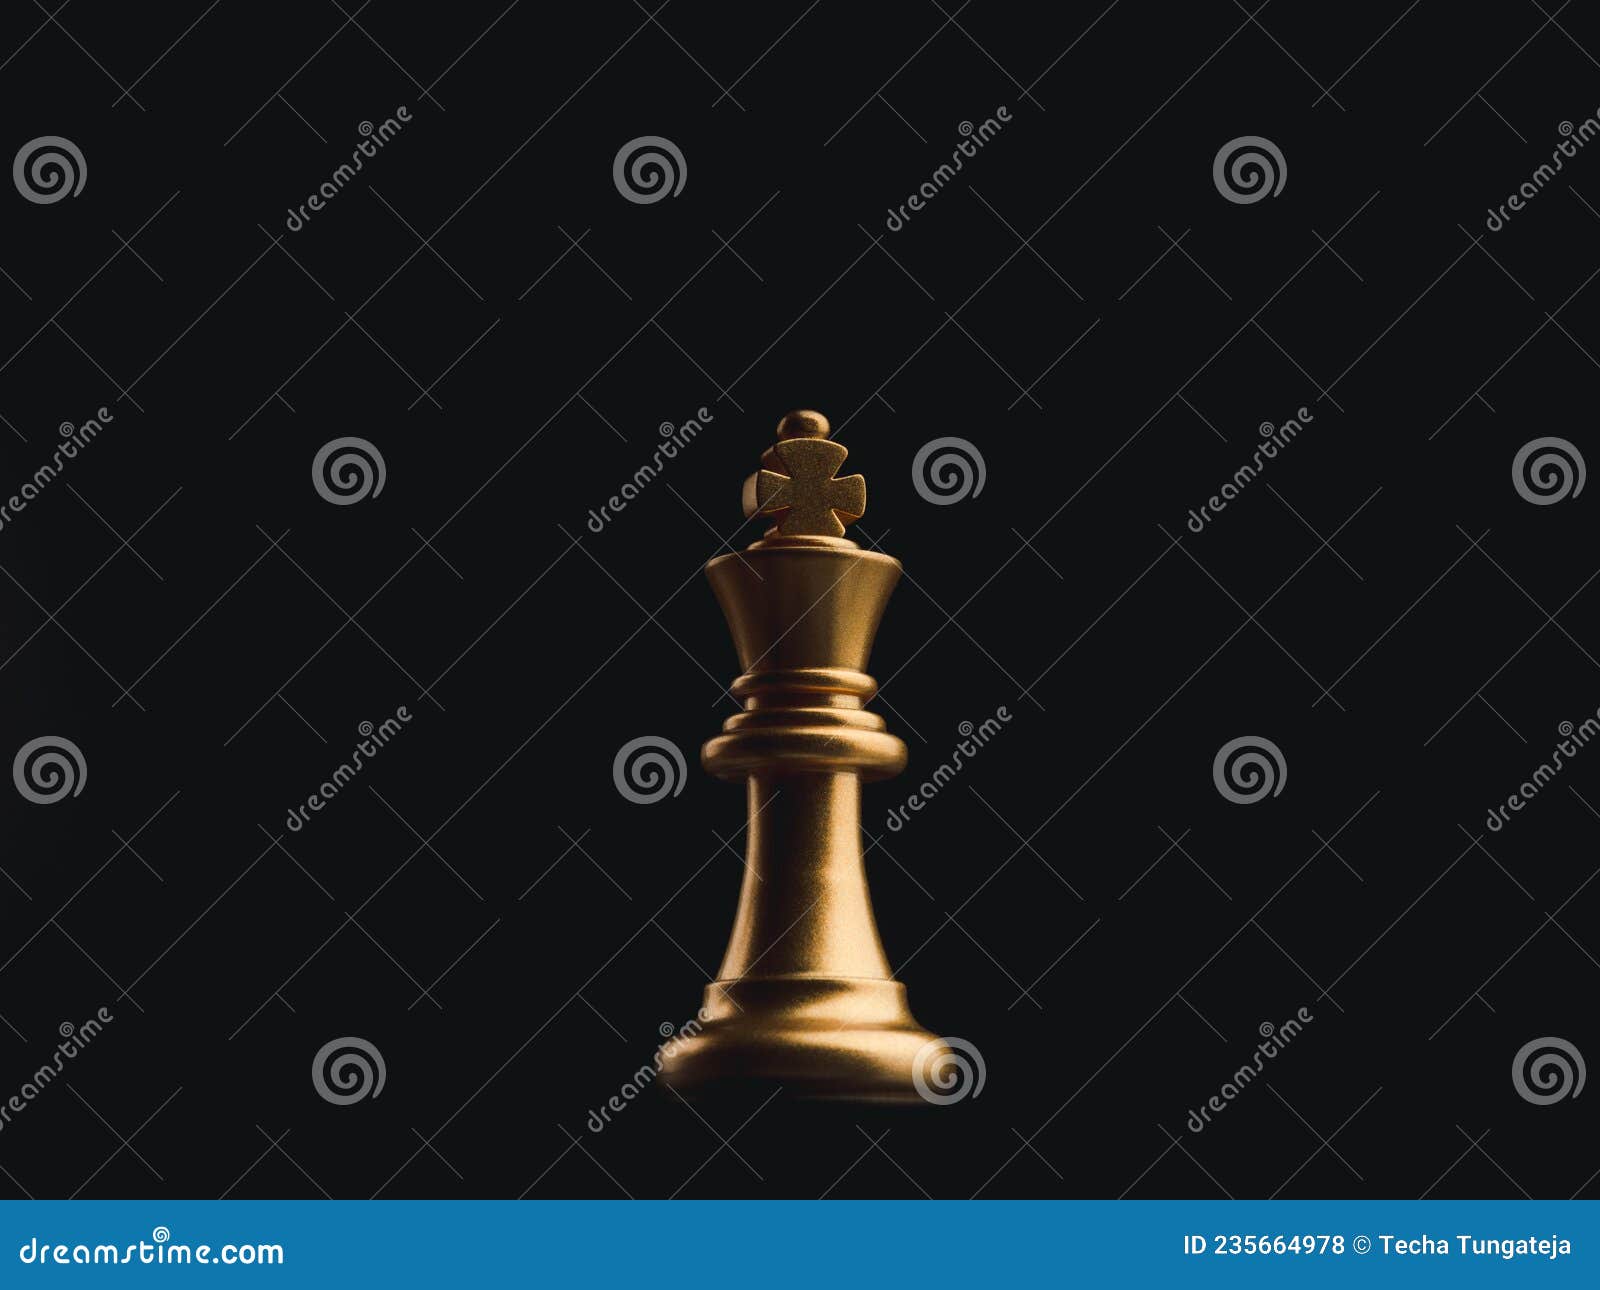 A peça de xadrez bispo de ouro na frente peões de ouro sobre fundo